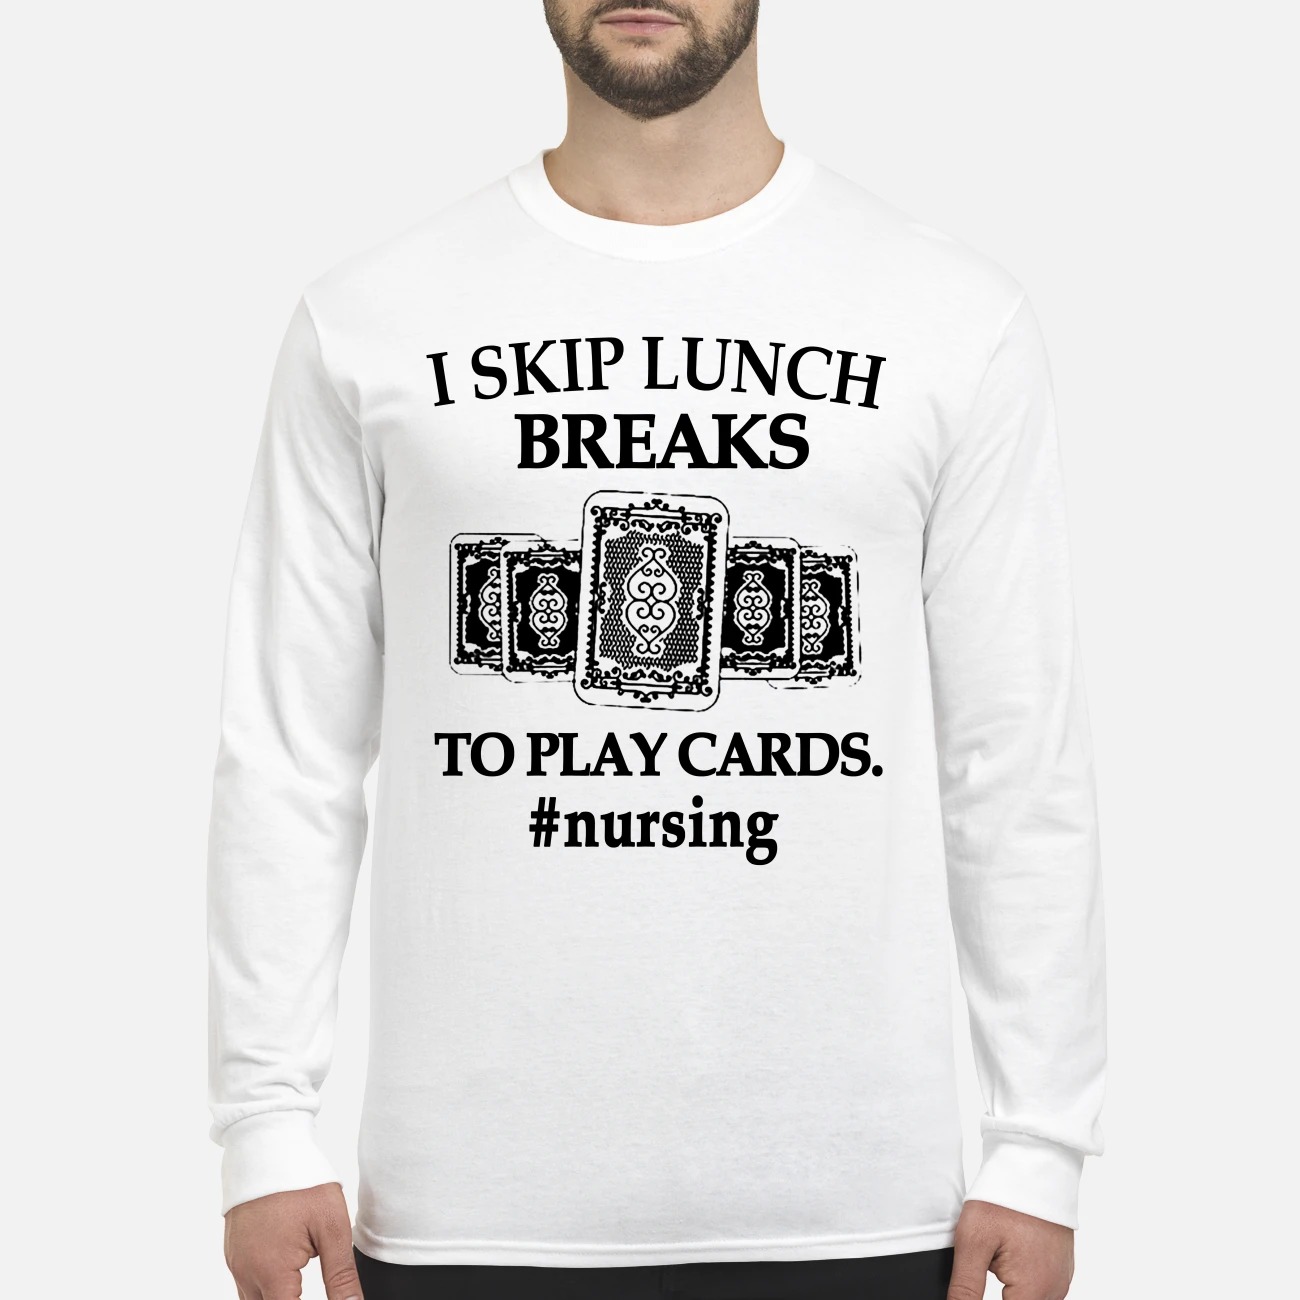 I skip lunch breaks to play cards nursing men's long sleeved shirt